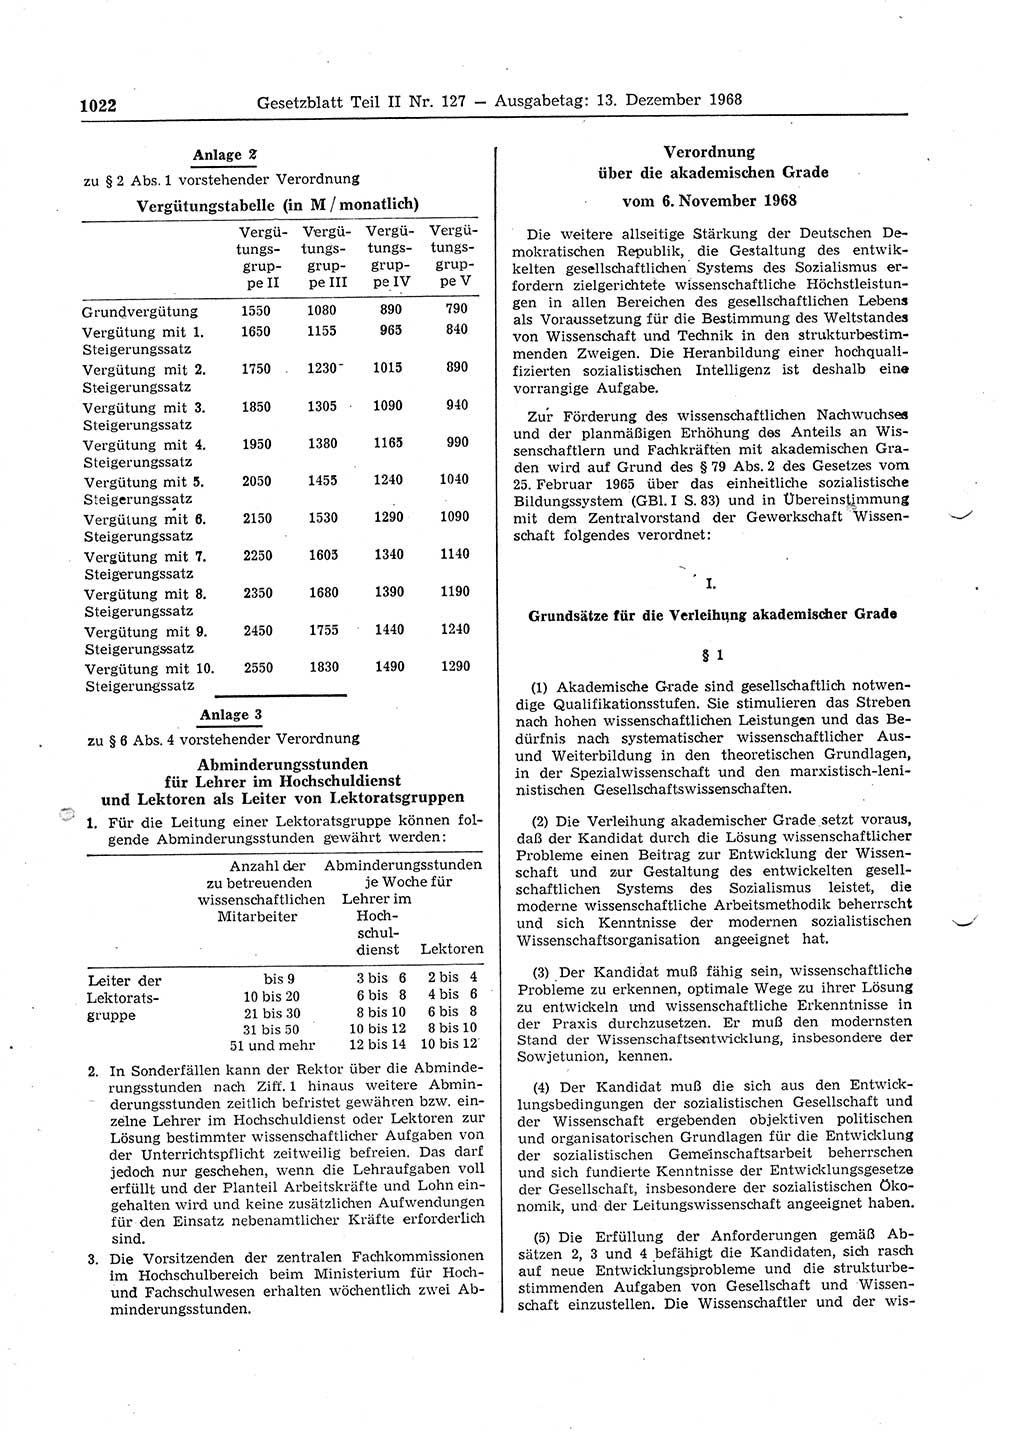 Gesetzblatt (GBl.) der Deutschen Demokratischen Republik (DDR) Teil ⅠⅠ 1968, Seite 1022 (GBl. DDR ⅠⅠ 1968, S. 1022)